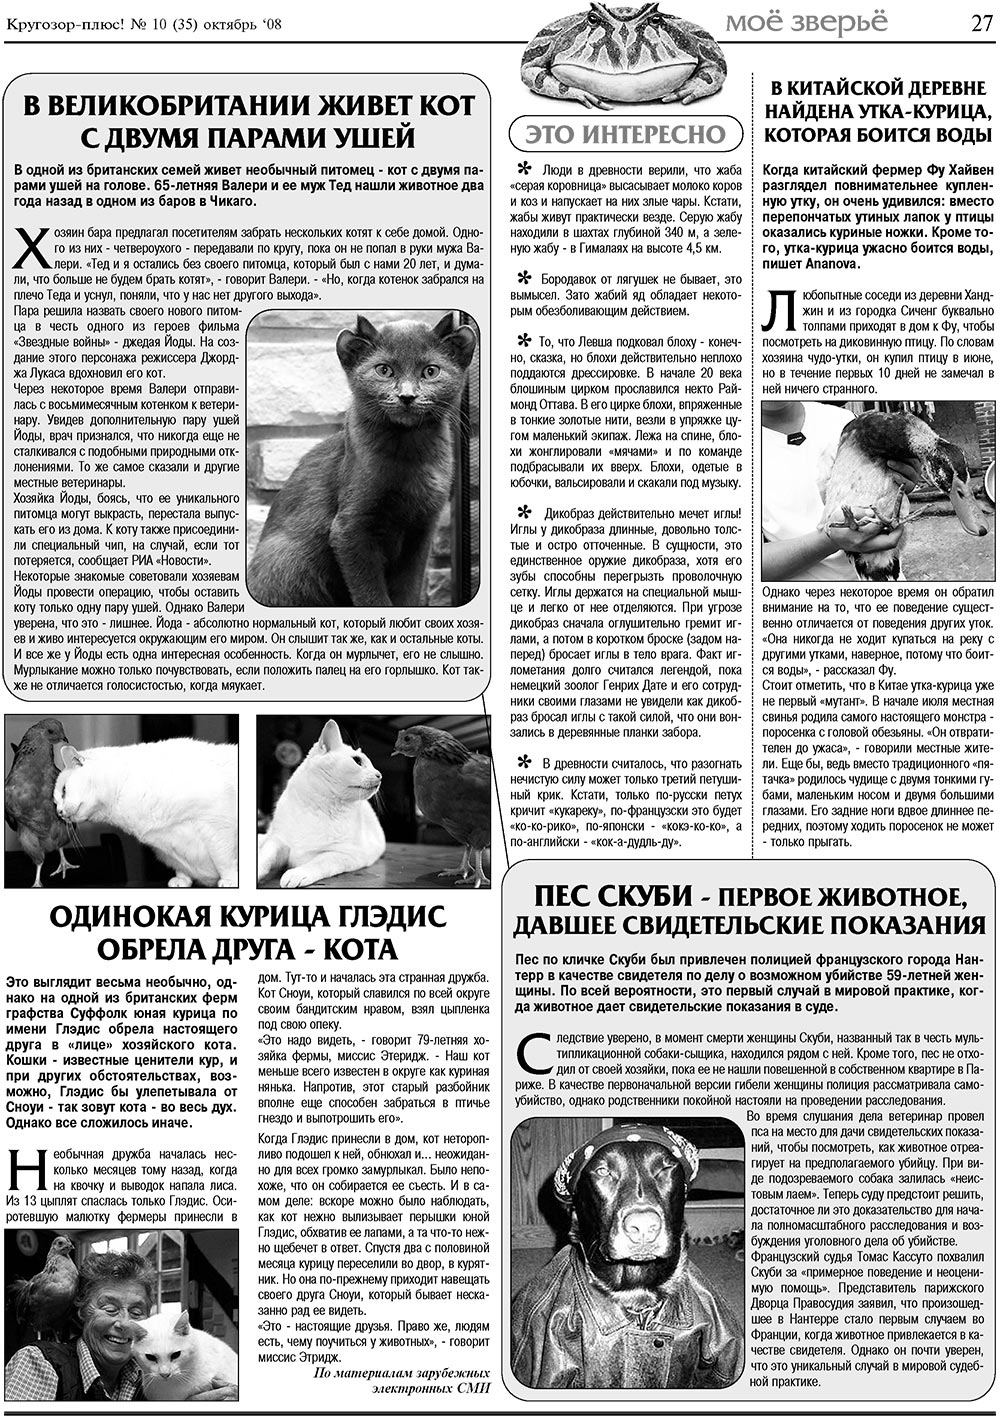 Кругозор плюс!, газета. 2008 №10 стр.27